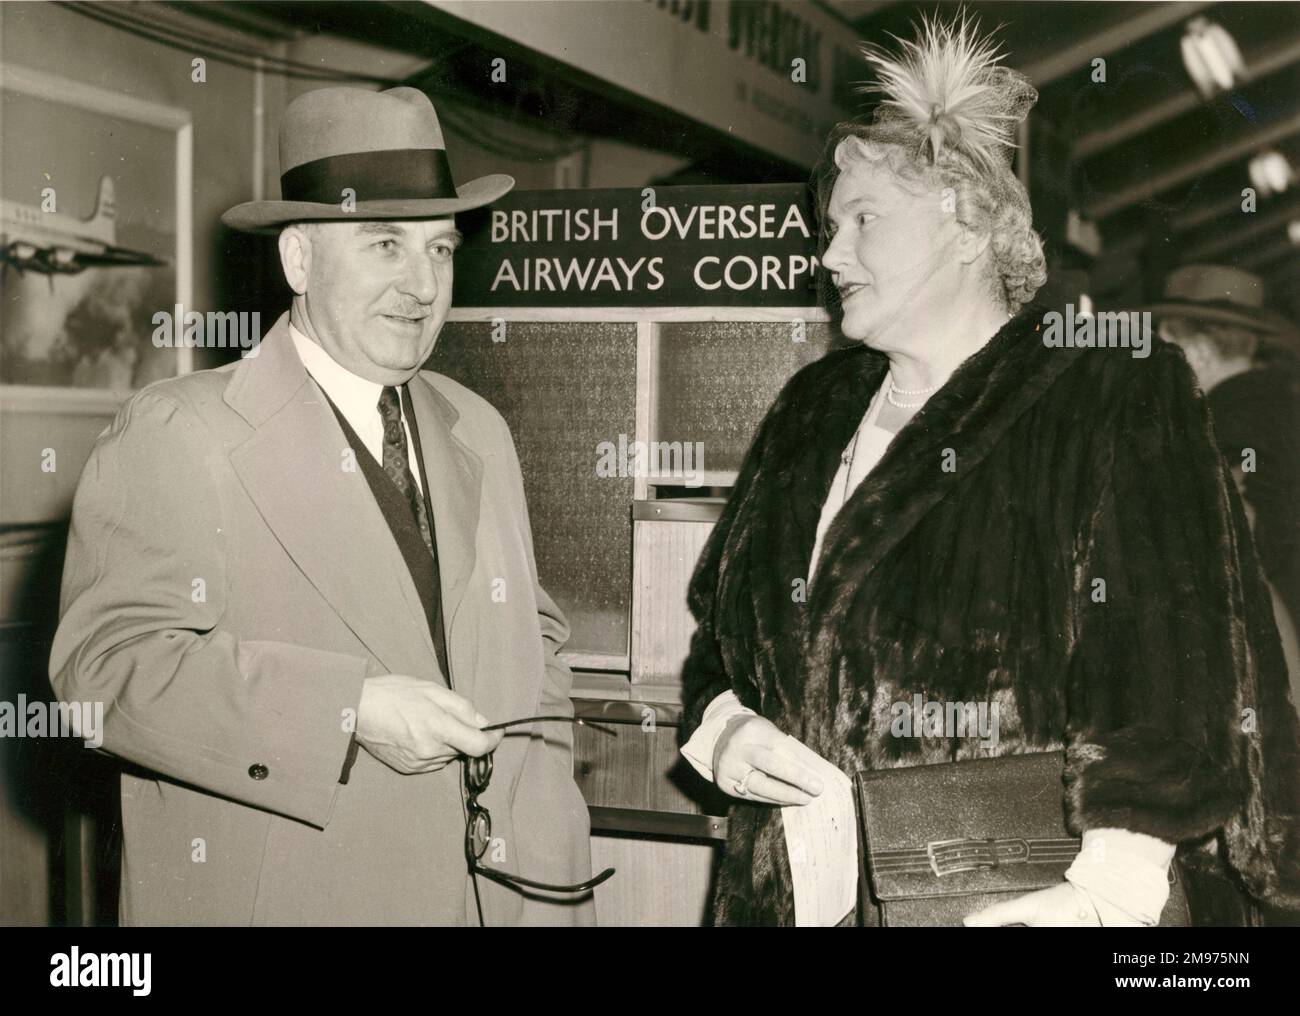 Sir Alan et Lady Cobham dans le salon de départ de l'aéroport de Londres avant de partir pour New York sur le service BOAC Monarch. Février 1952. Banque D'Images